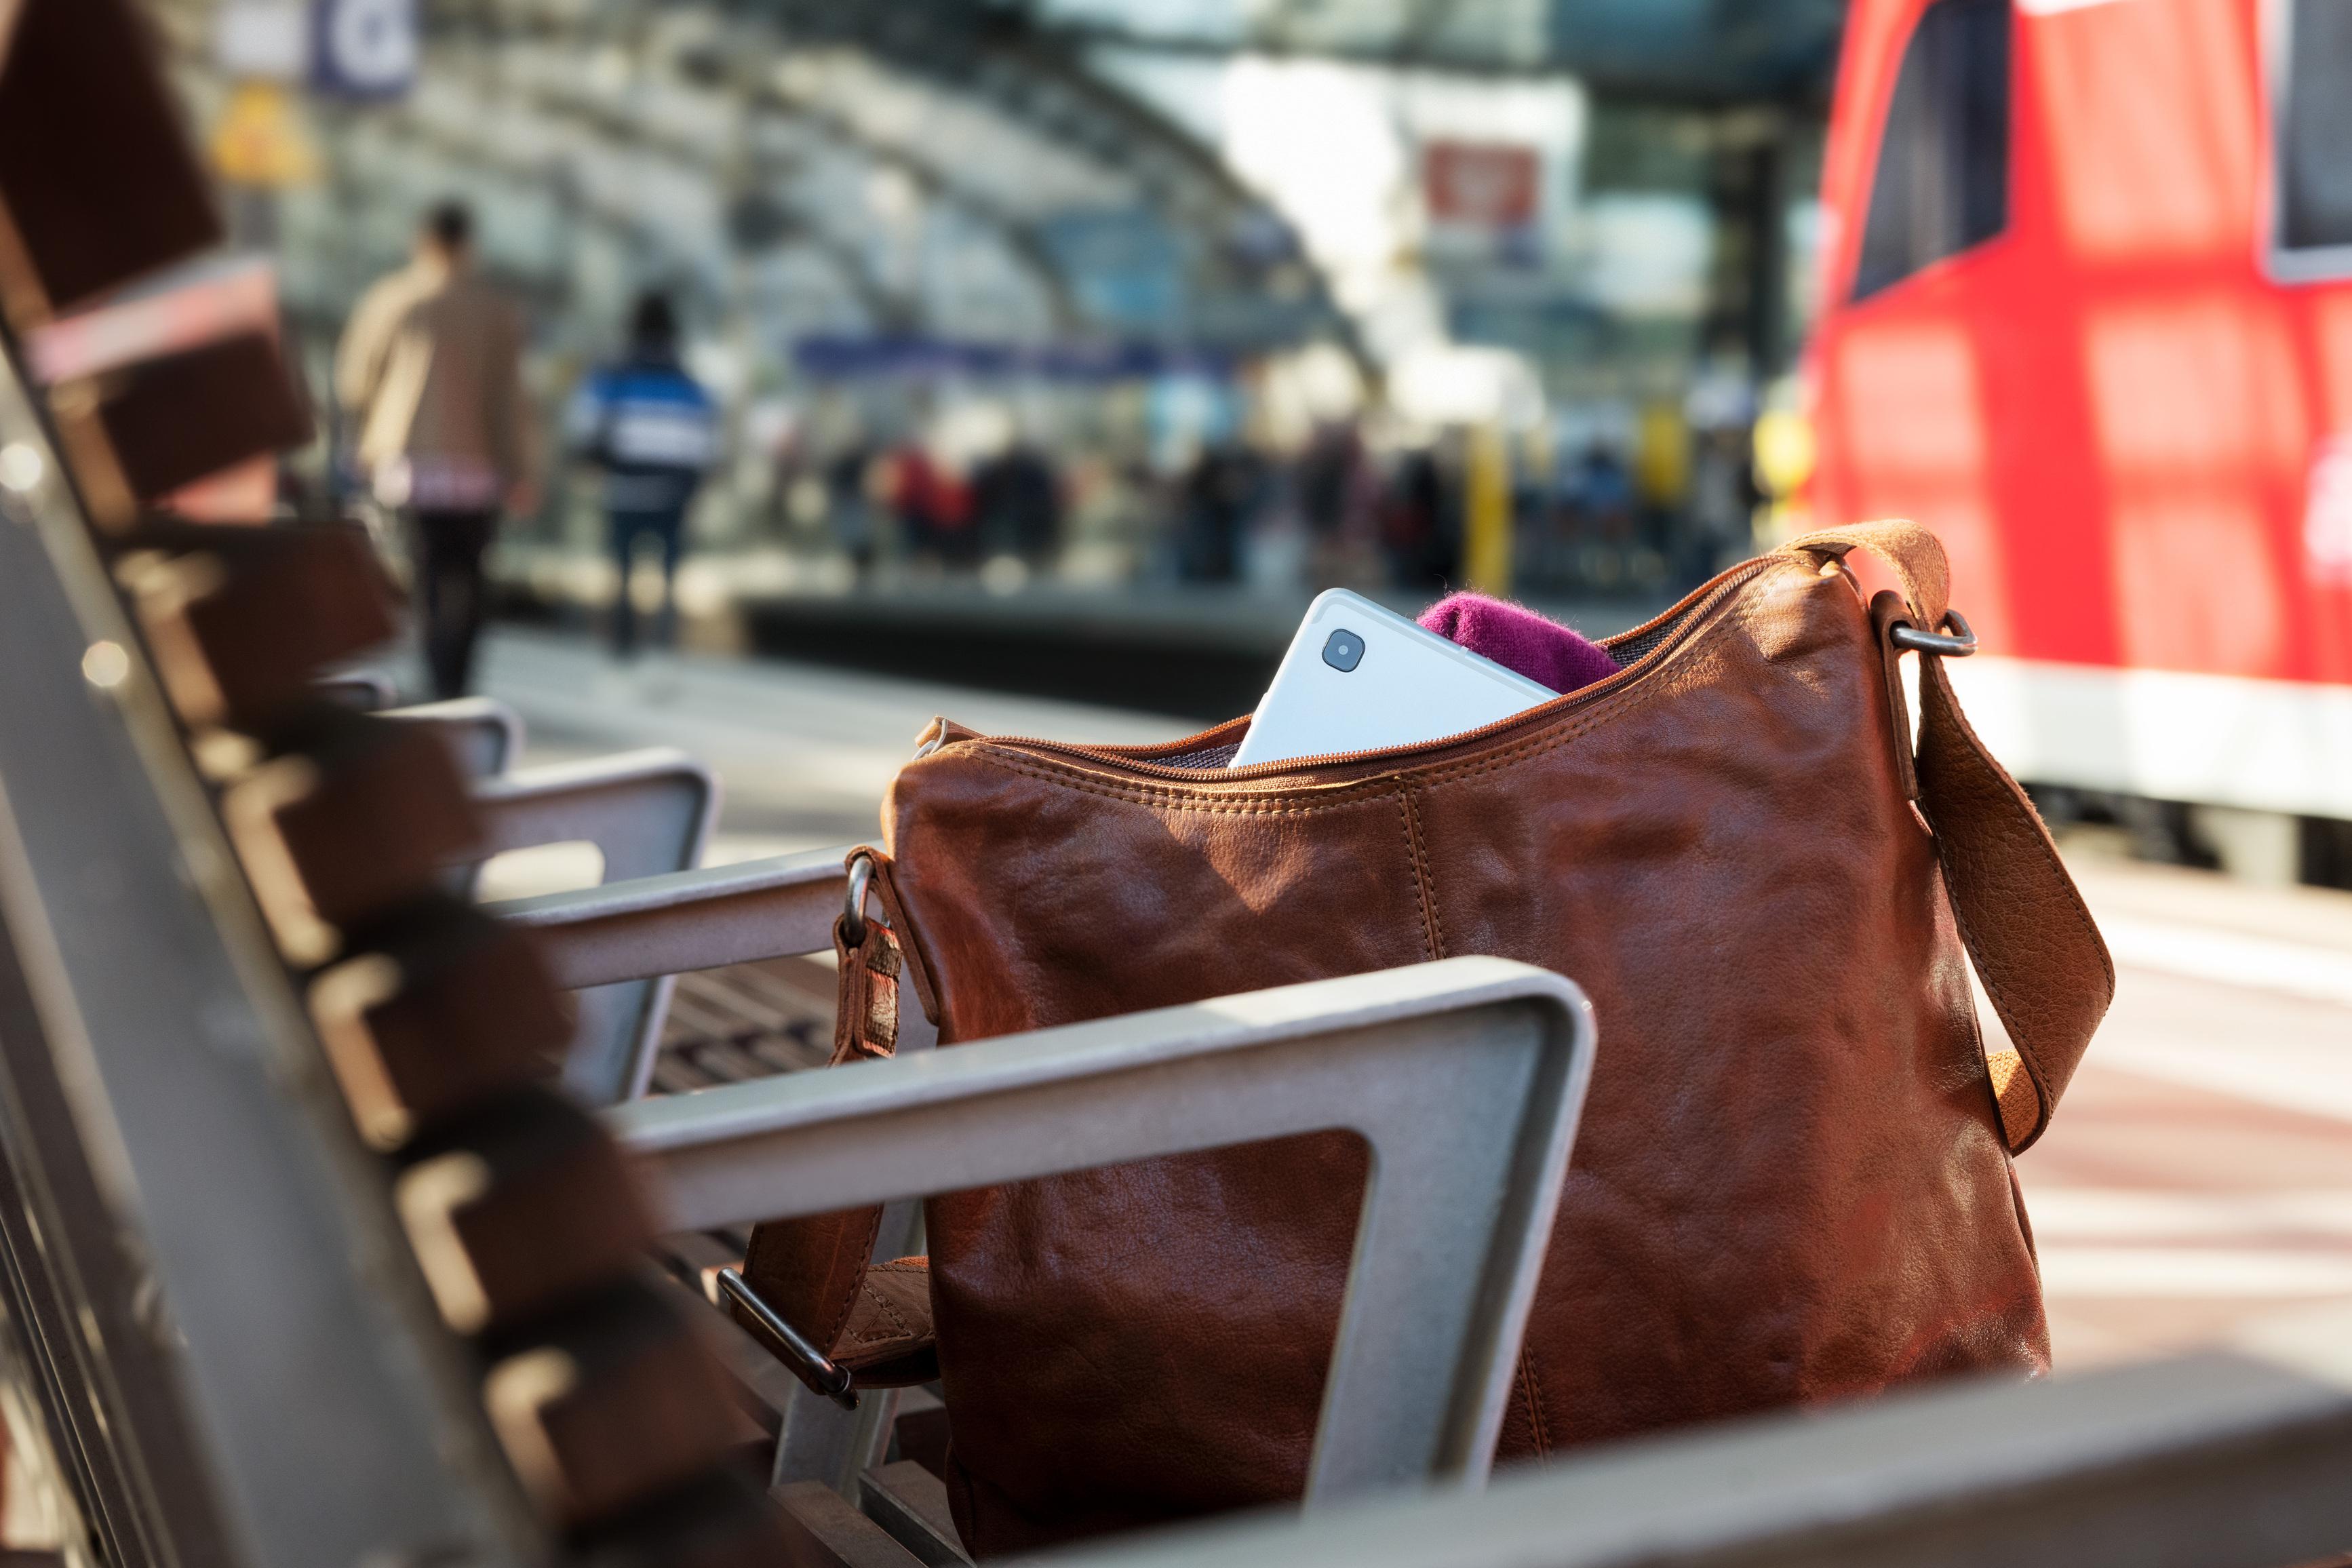 Eine verlorene Handtasche auf einer Bank an einem Bahnsteig.